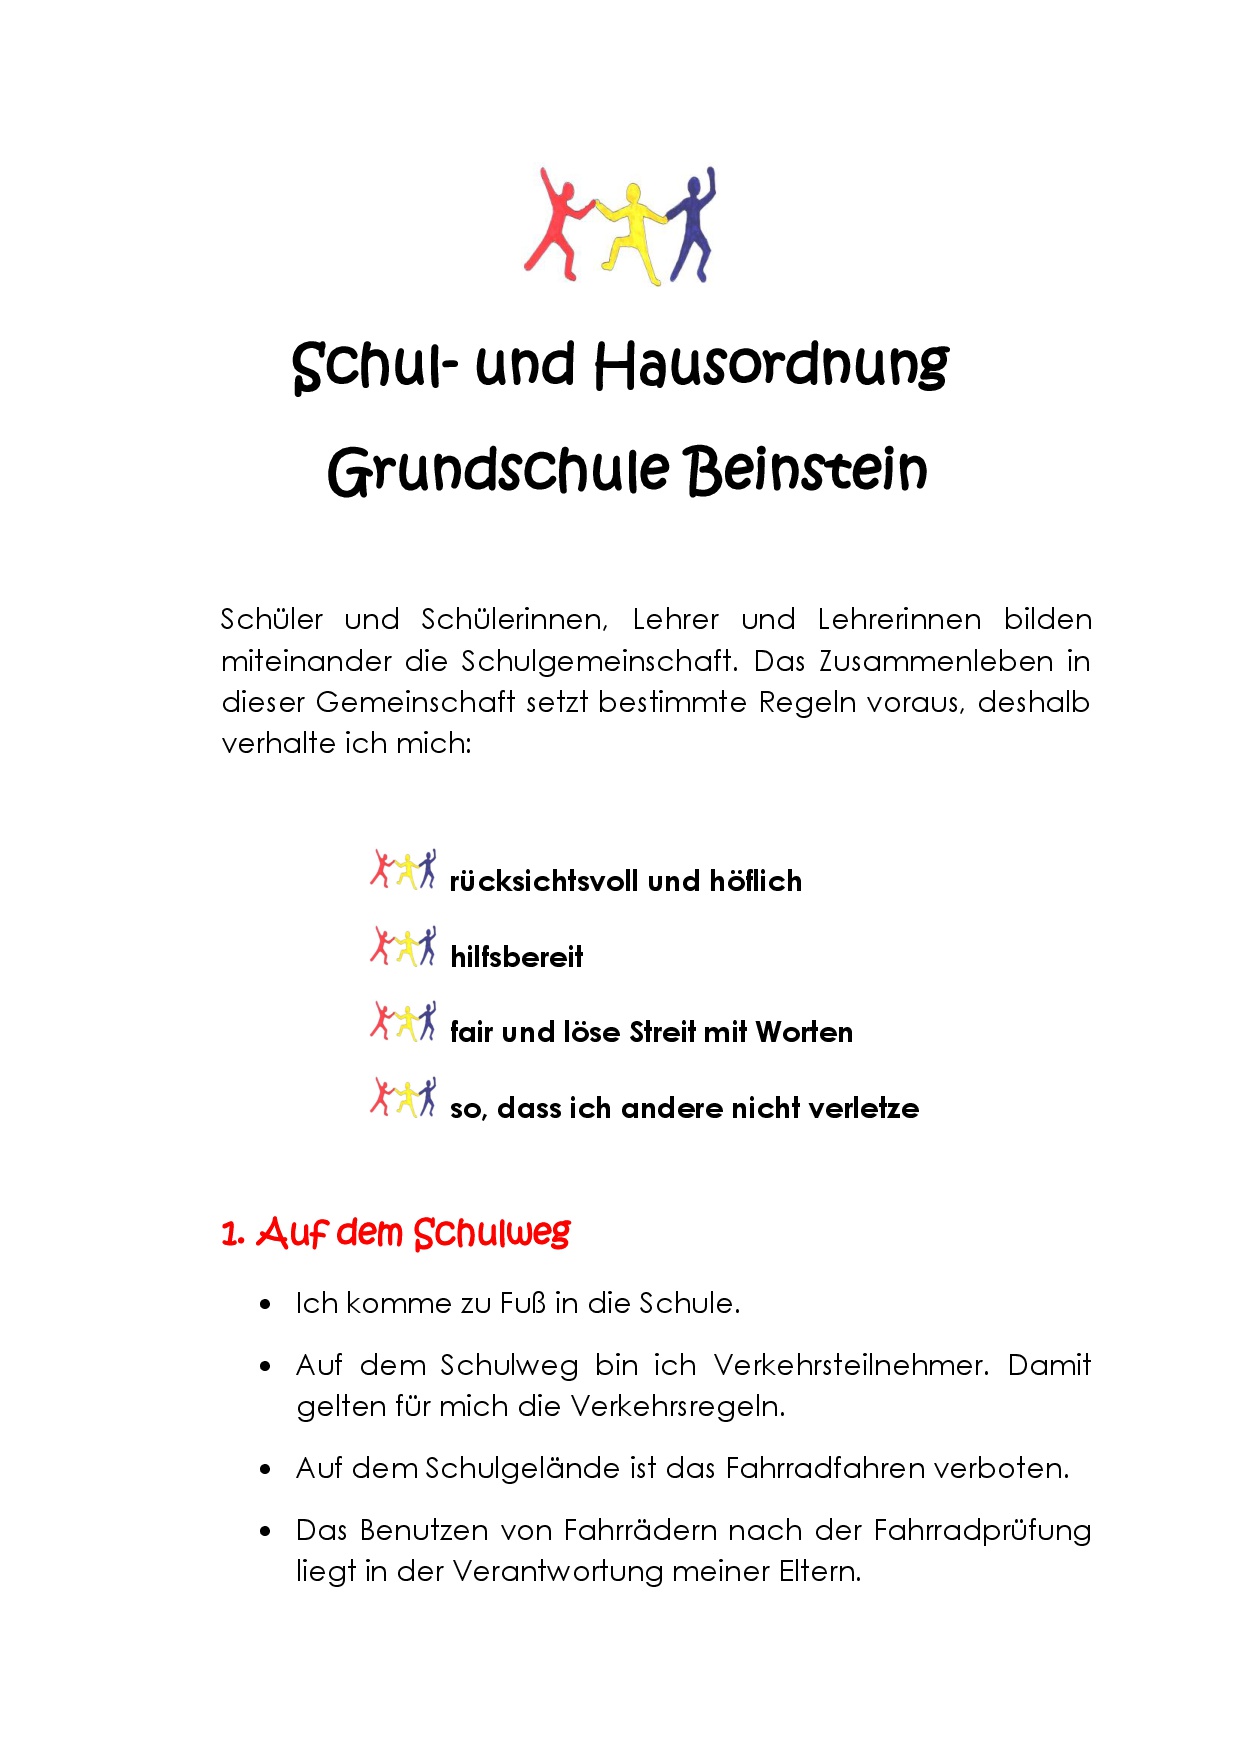 Schul- und Hausordnung der Grundschule Beinstein